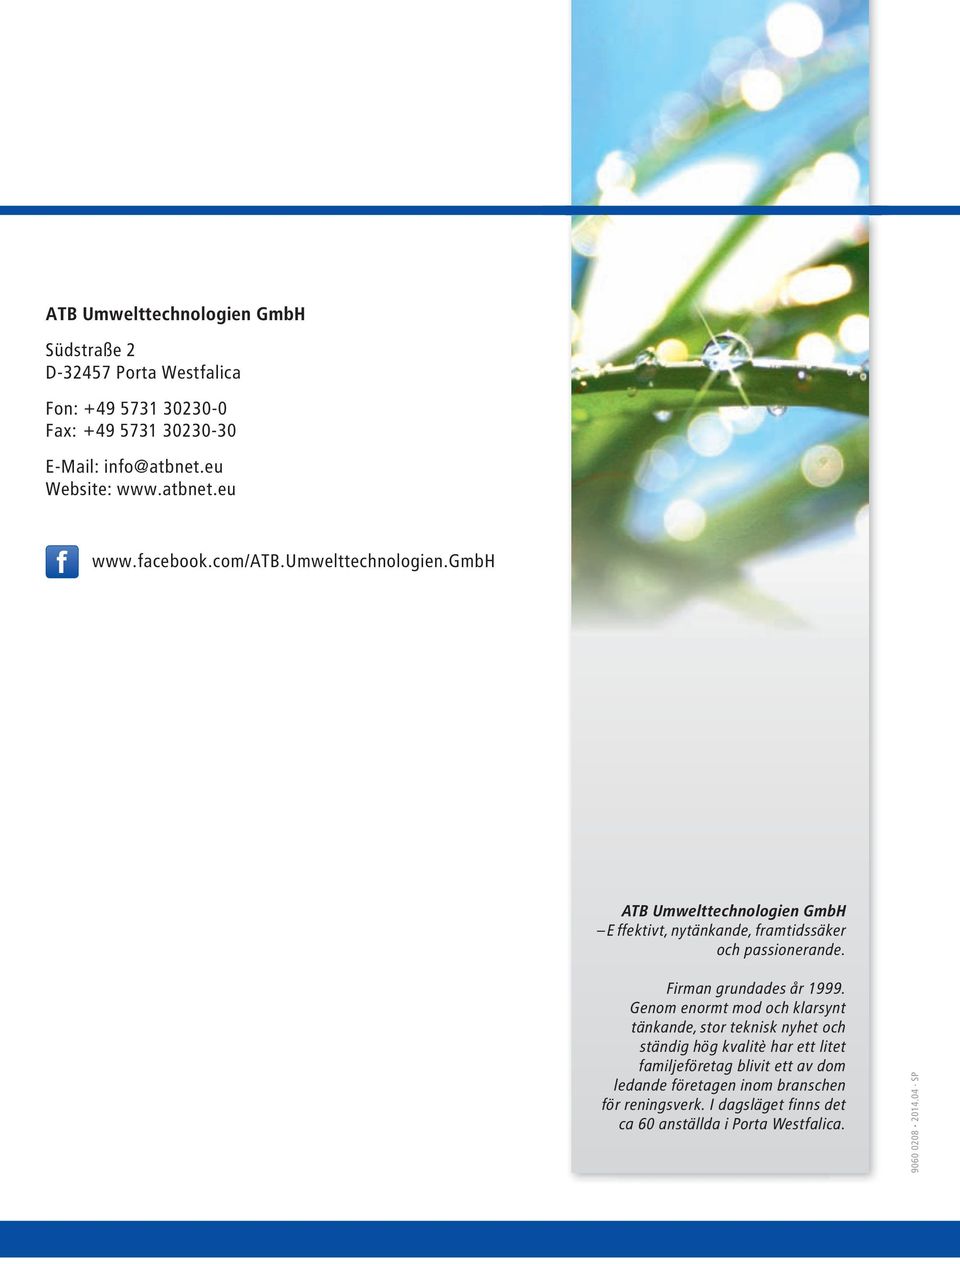 gmbh ATB Umwelttechnologien GmbH Effektivt, nytänkande, framtidssäker och passionerande. Firman grundades år 1999.